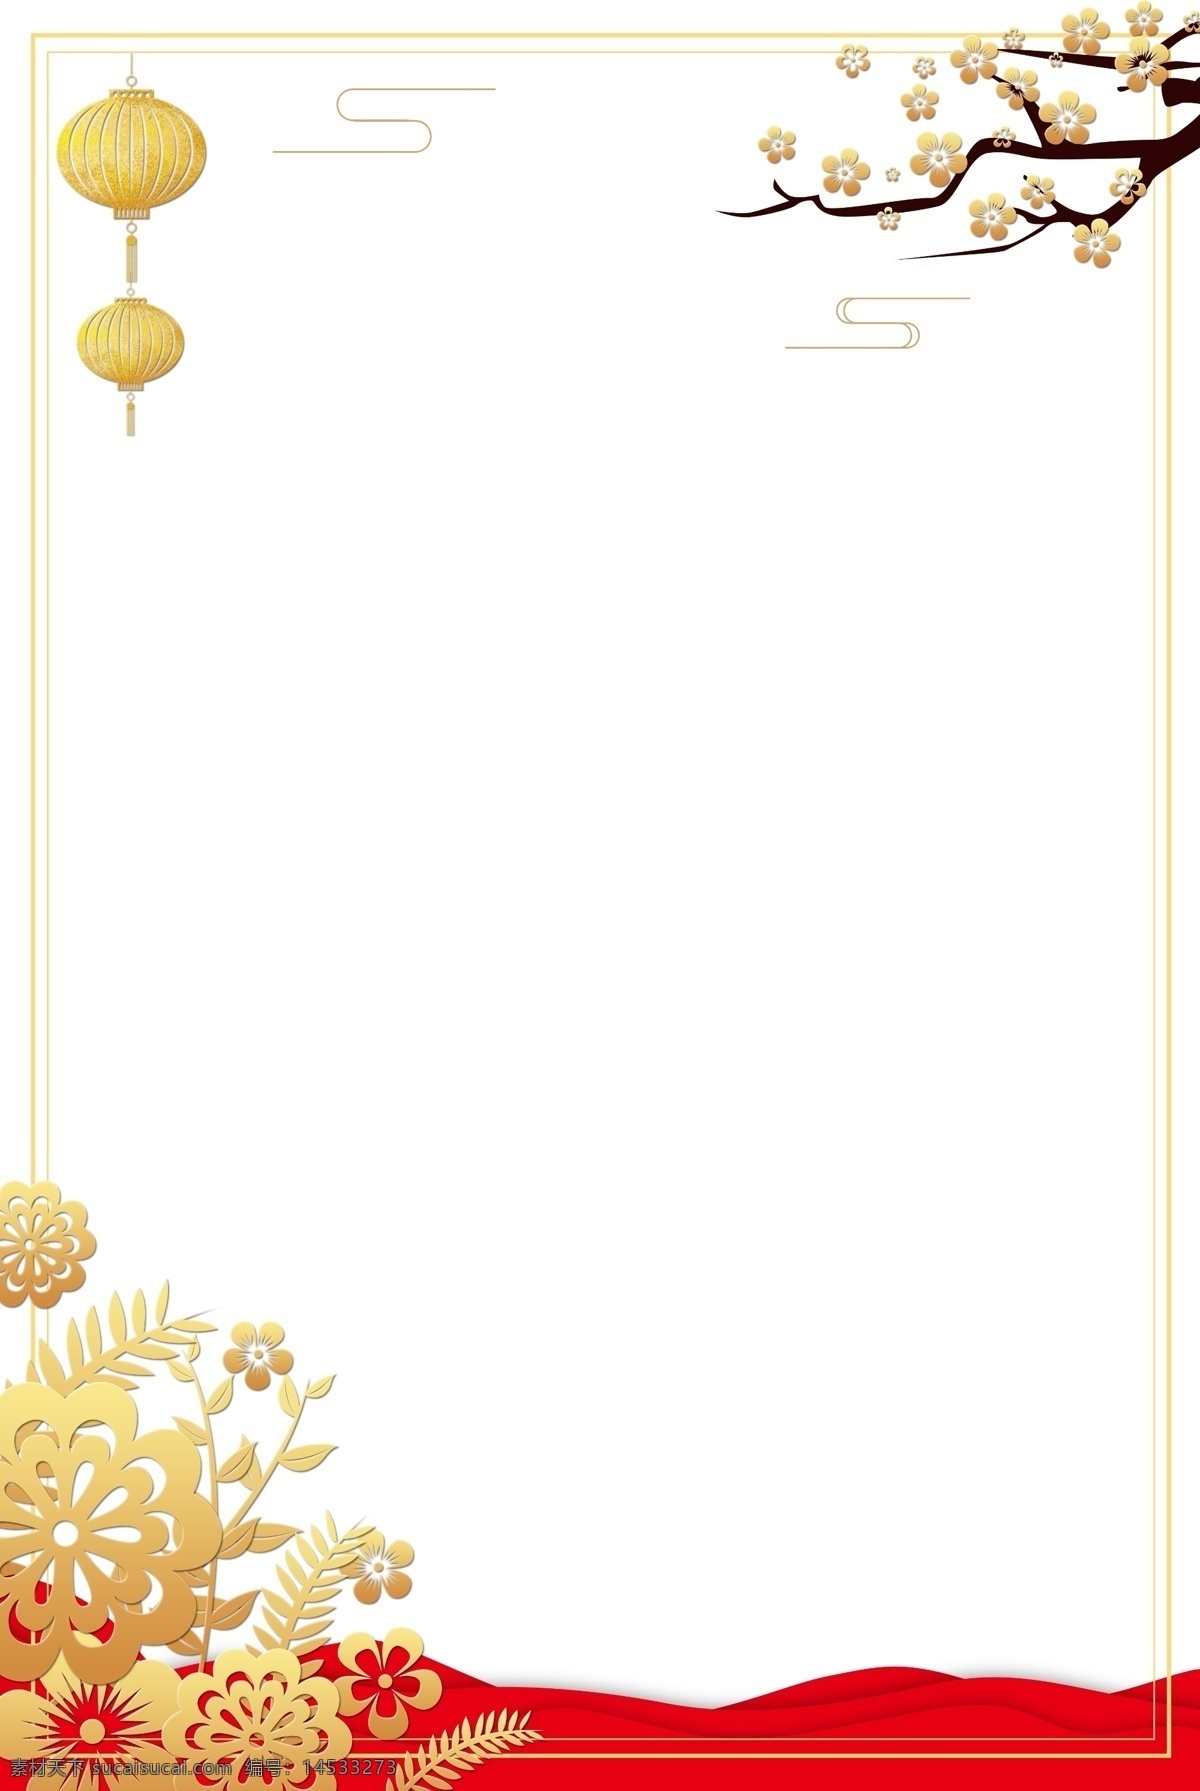 中国 风 金色 海报 装饰 新年 春节 过年 2019年 猪年 农历新年 中国风 梅花 祥云 灯笼 海报装饰 矢量 海报边框 中式